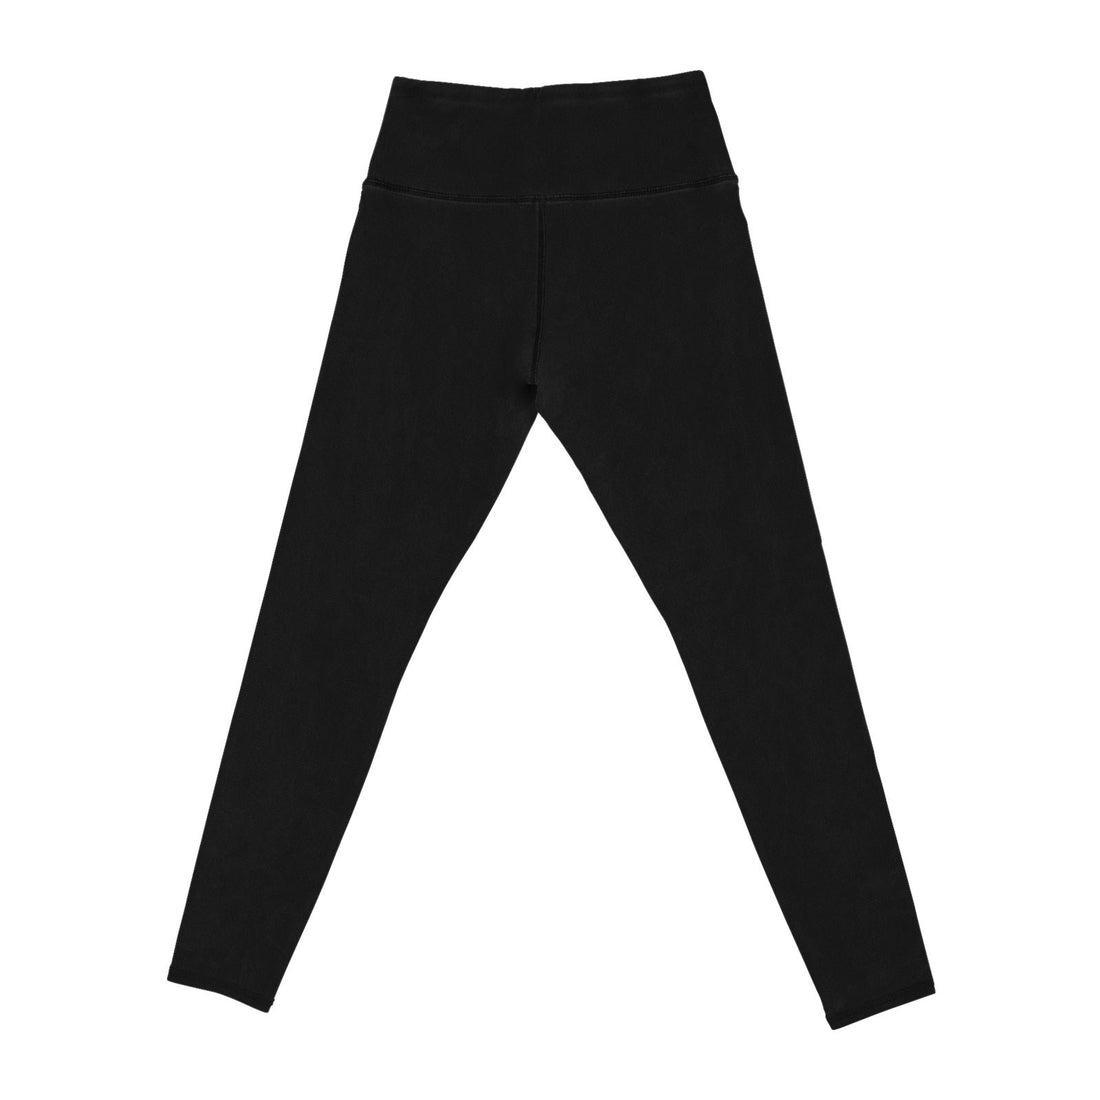 Britt's Knits Basics Fleece-Lined Leggings - Black